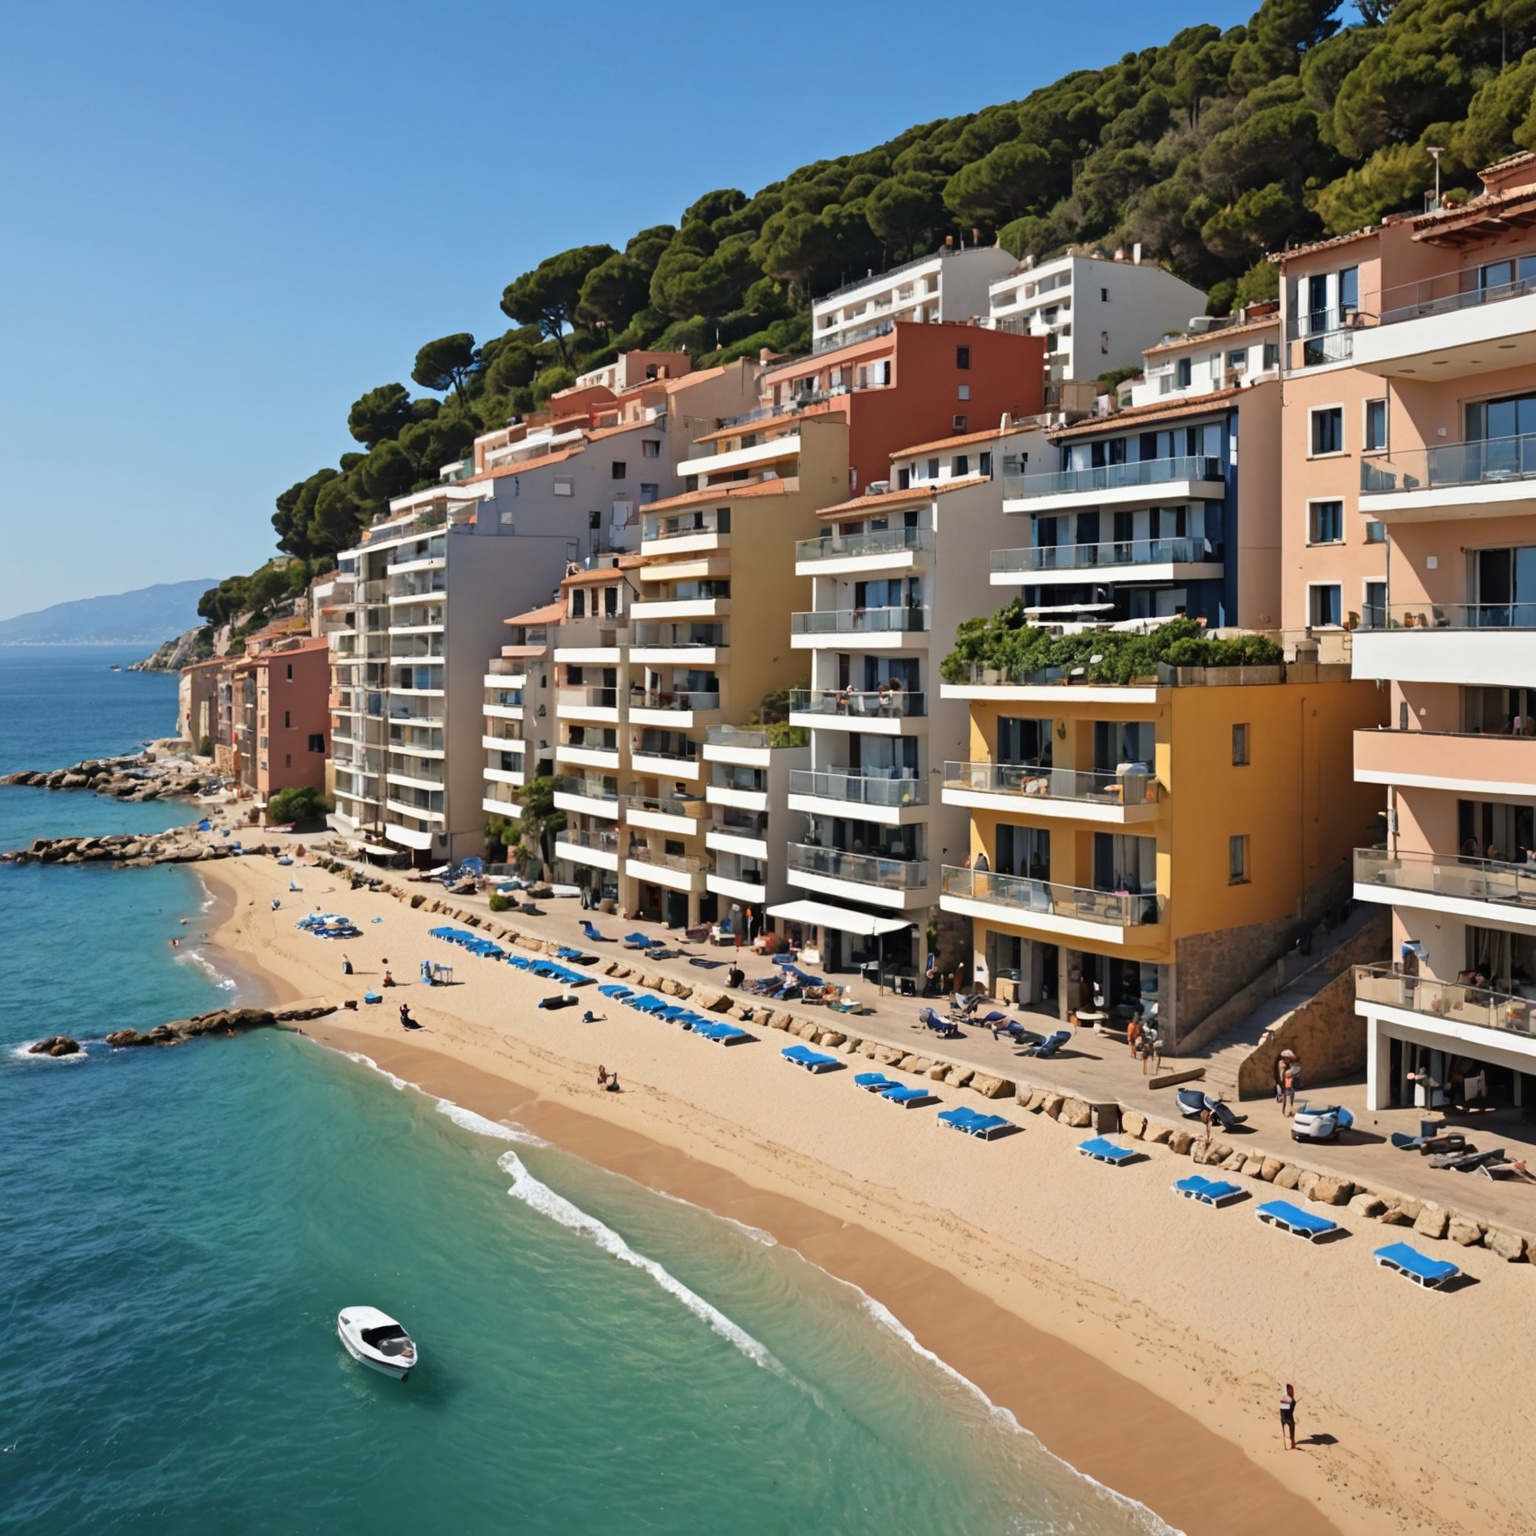 Location à Ajaccio : Top des Agences Immobilières selon Appartements-Hossegor